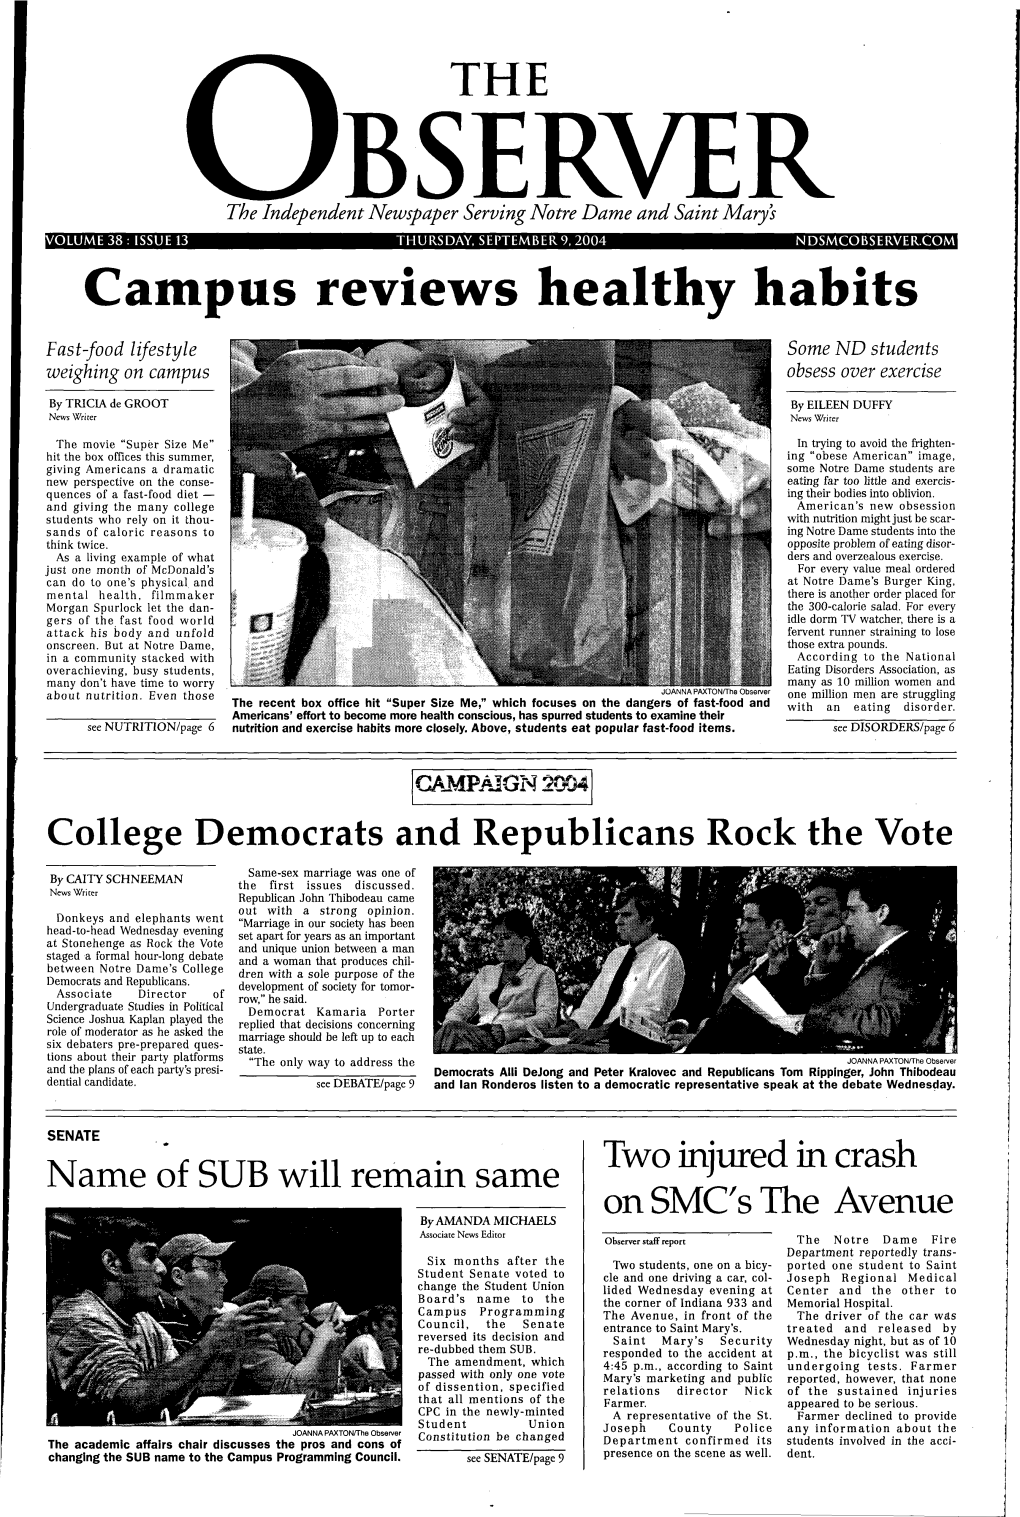 Campus Reviews Healthy Habits